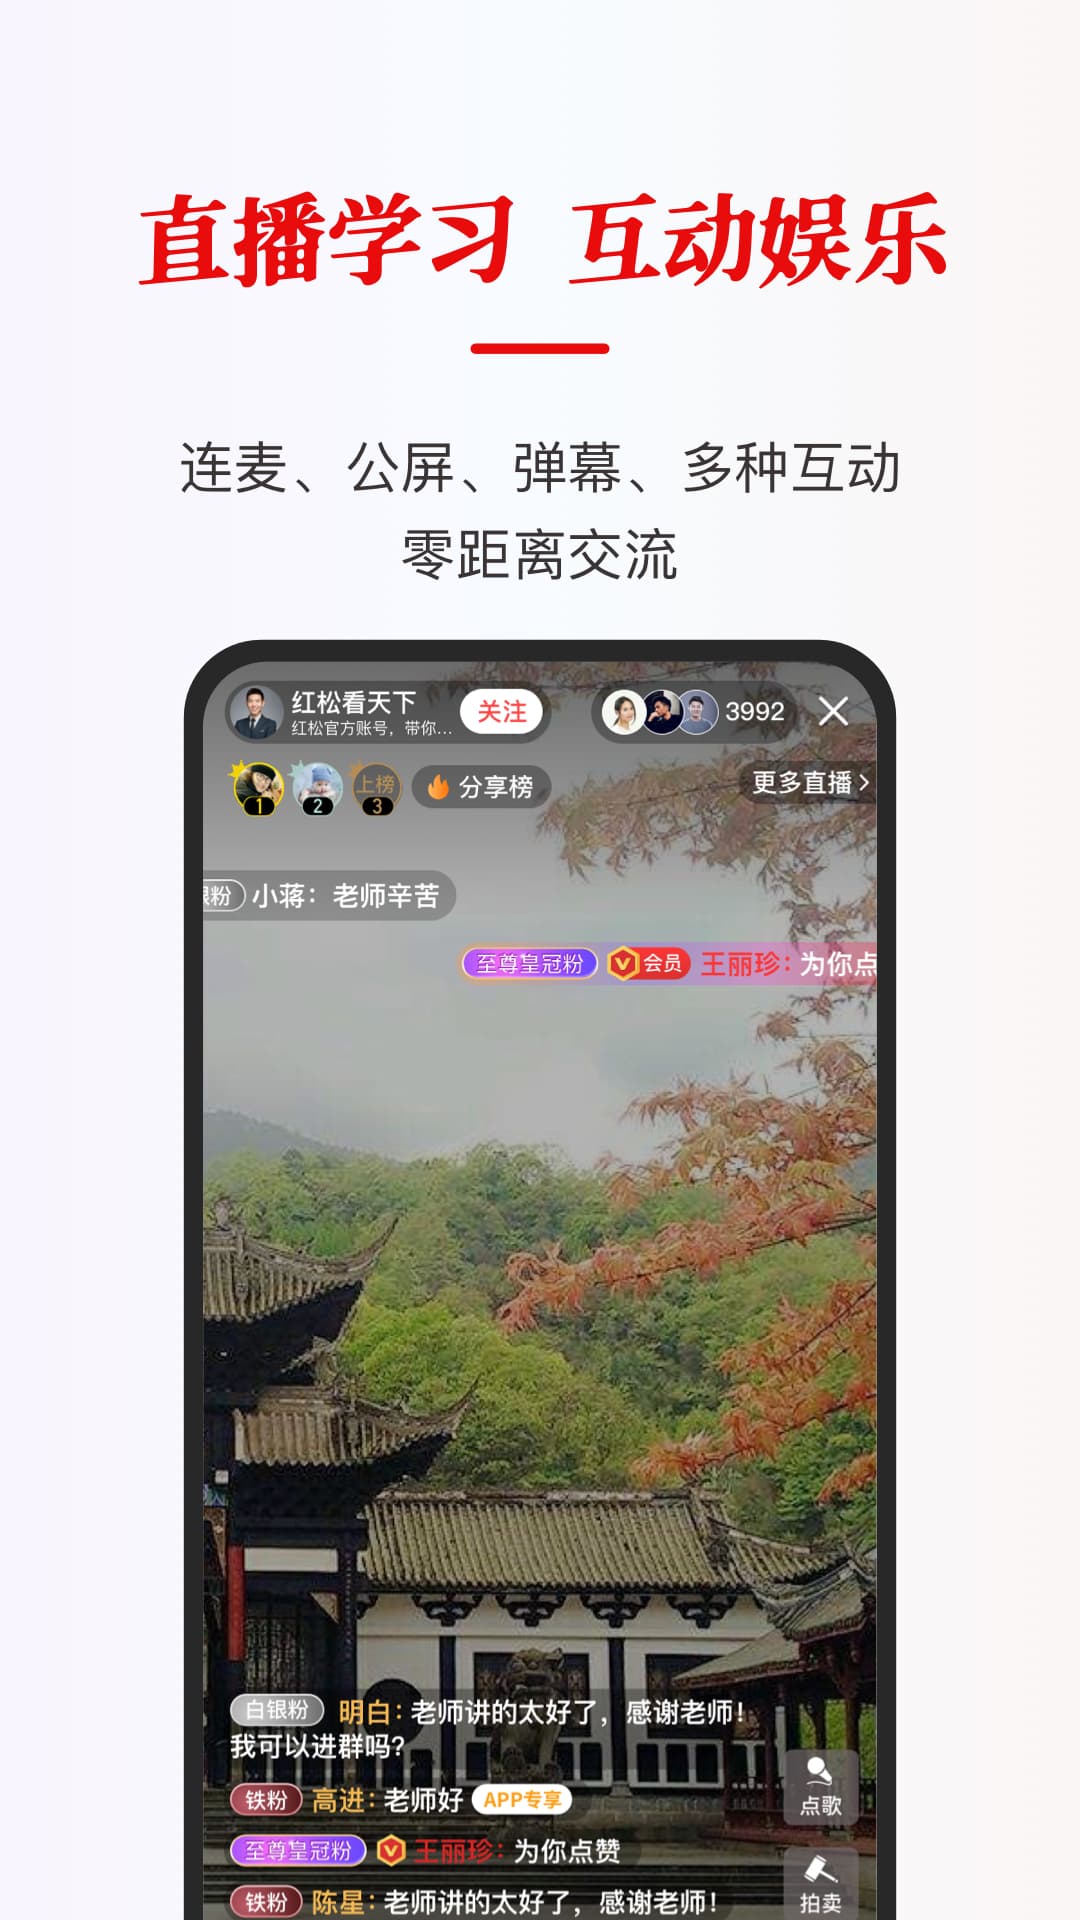 红松课堂app